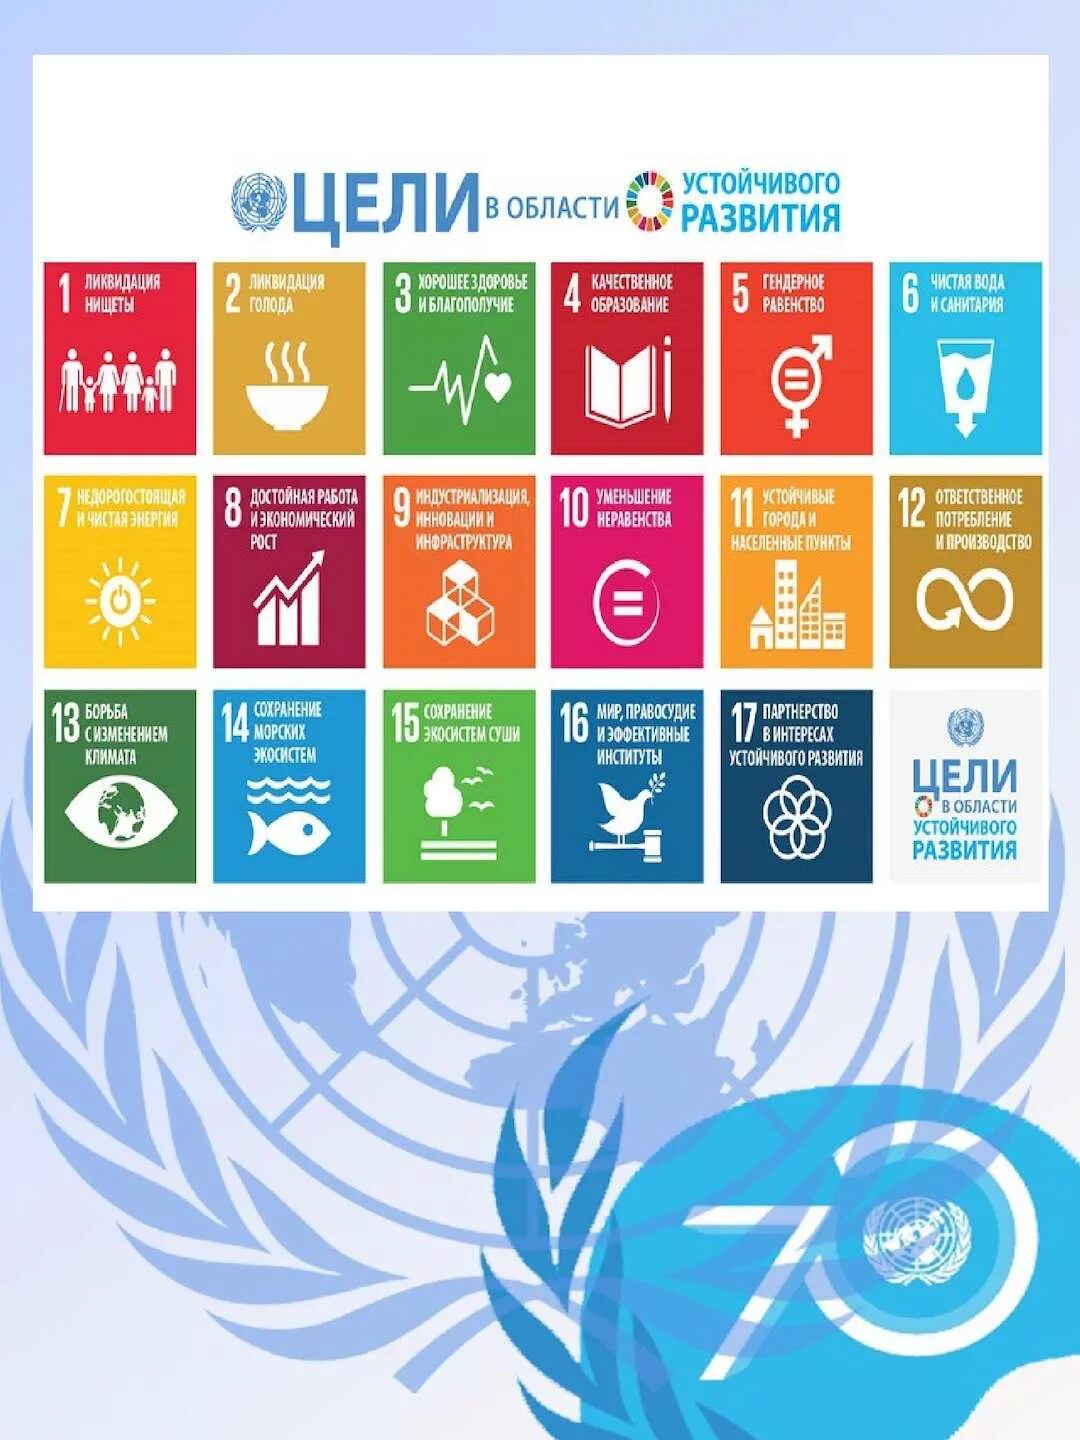 17 Целей устойчивого развития ООН. Цели устойчивого развития. Цели в области устойчивого развития. Цели развития ООН.